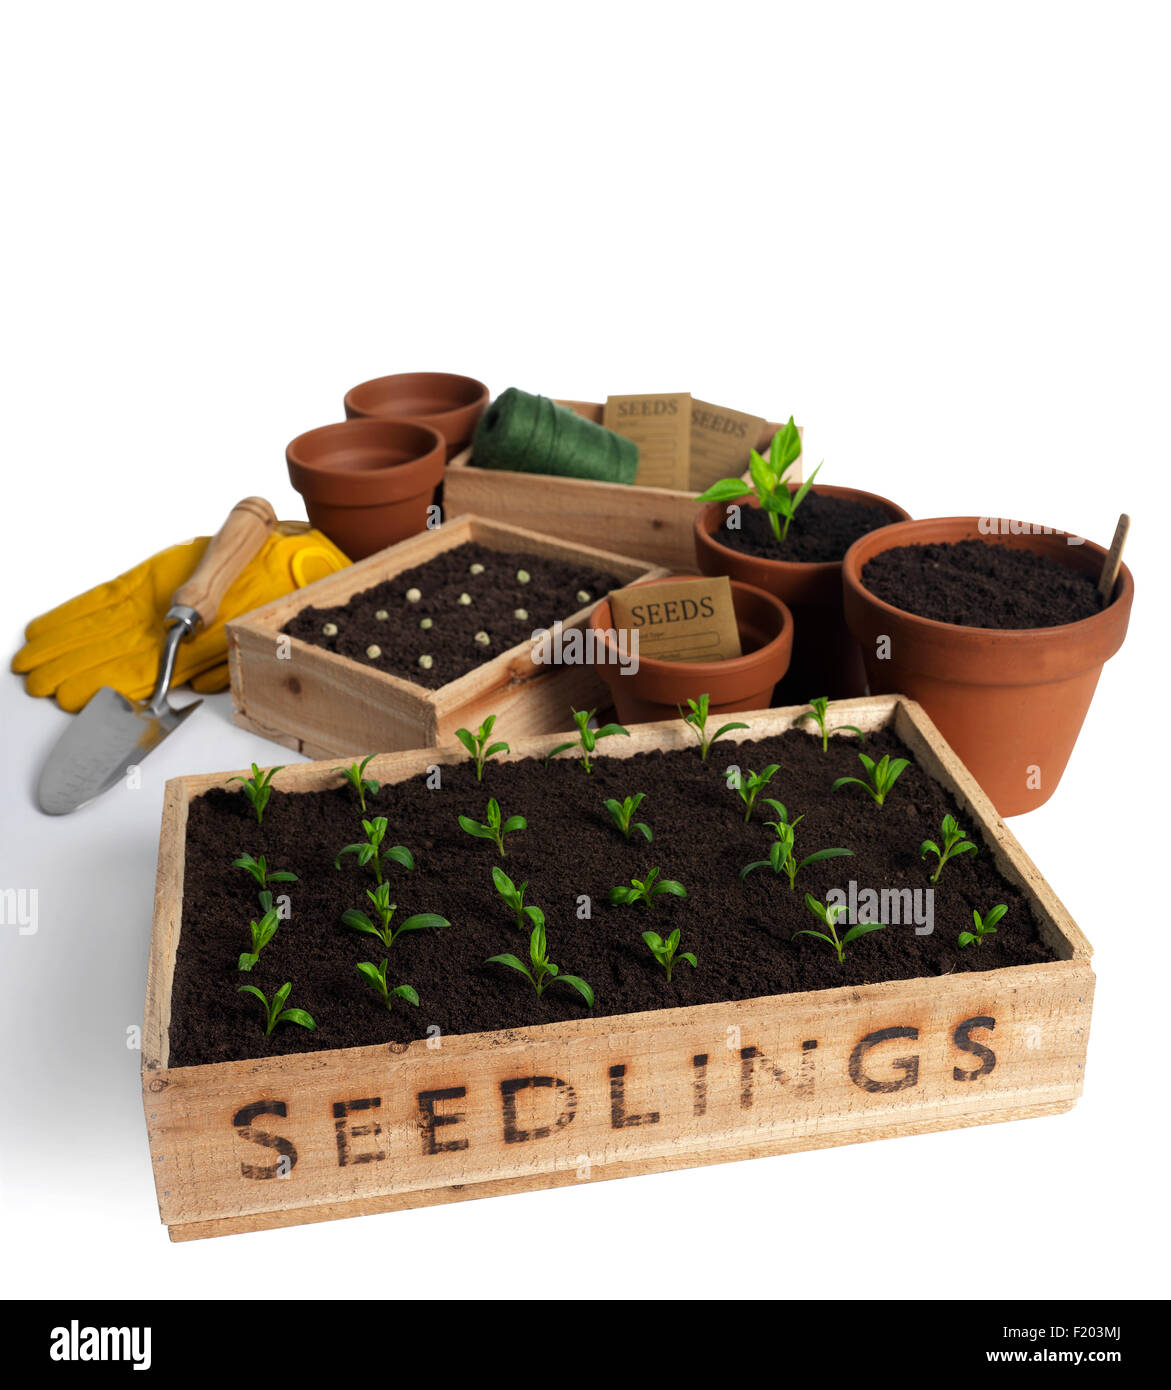 Bac à semis avec des outils de jardinage isolated on white Banque D'Images